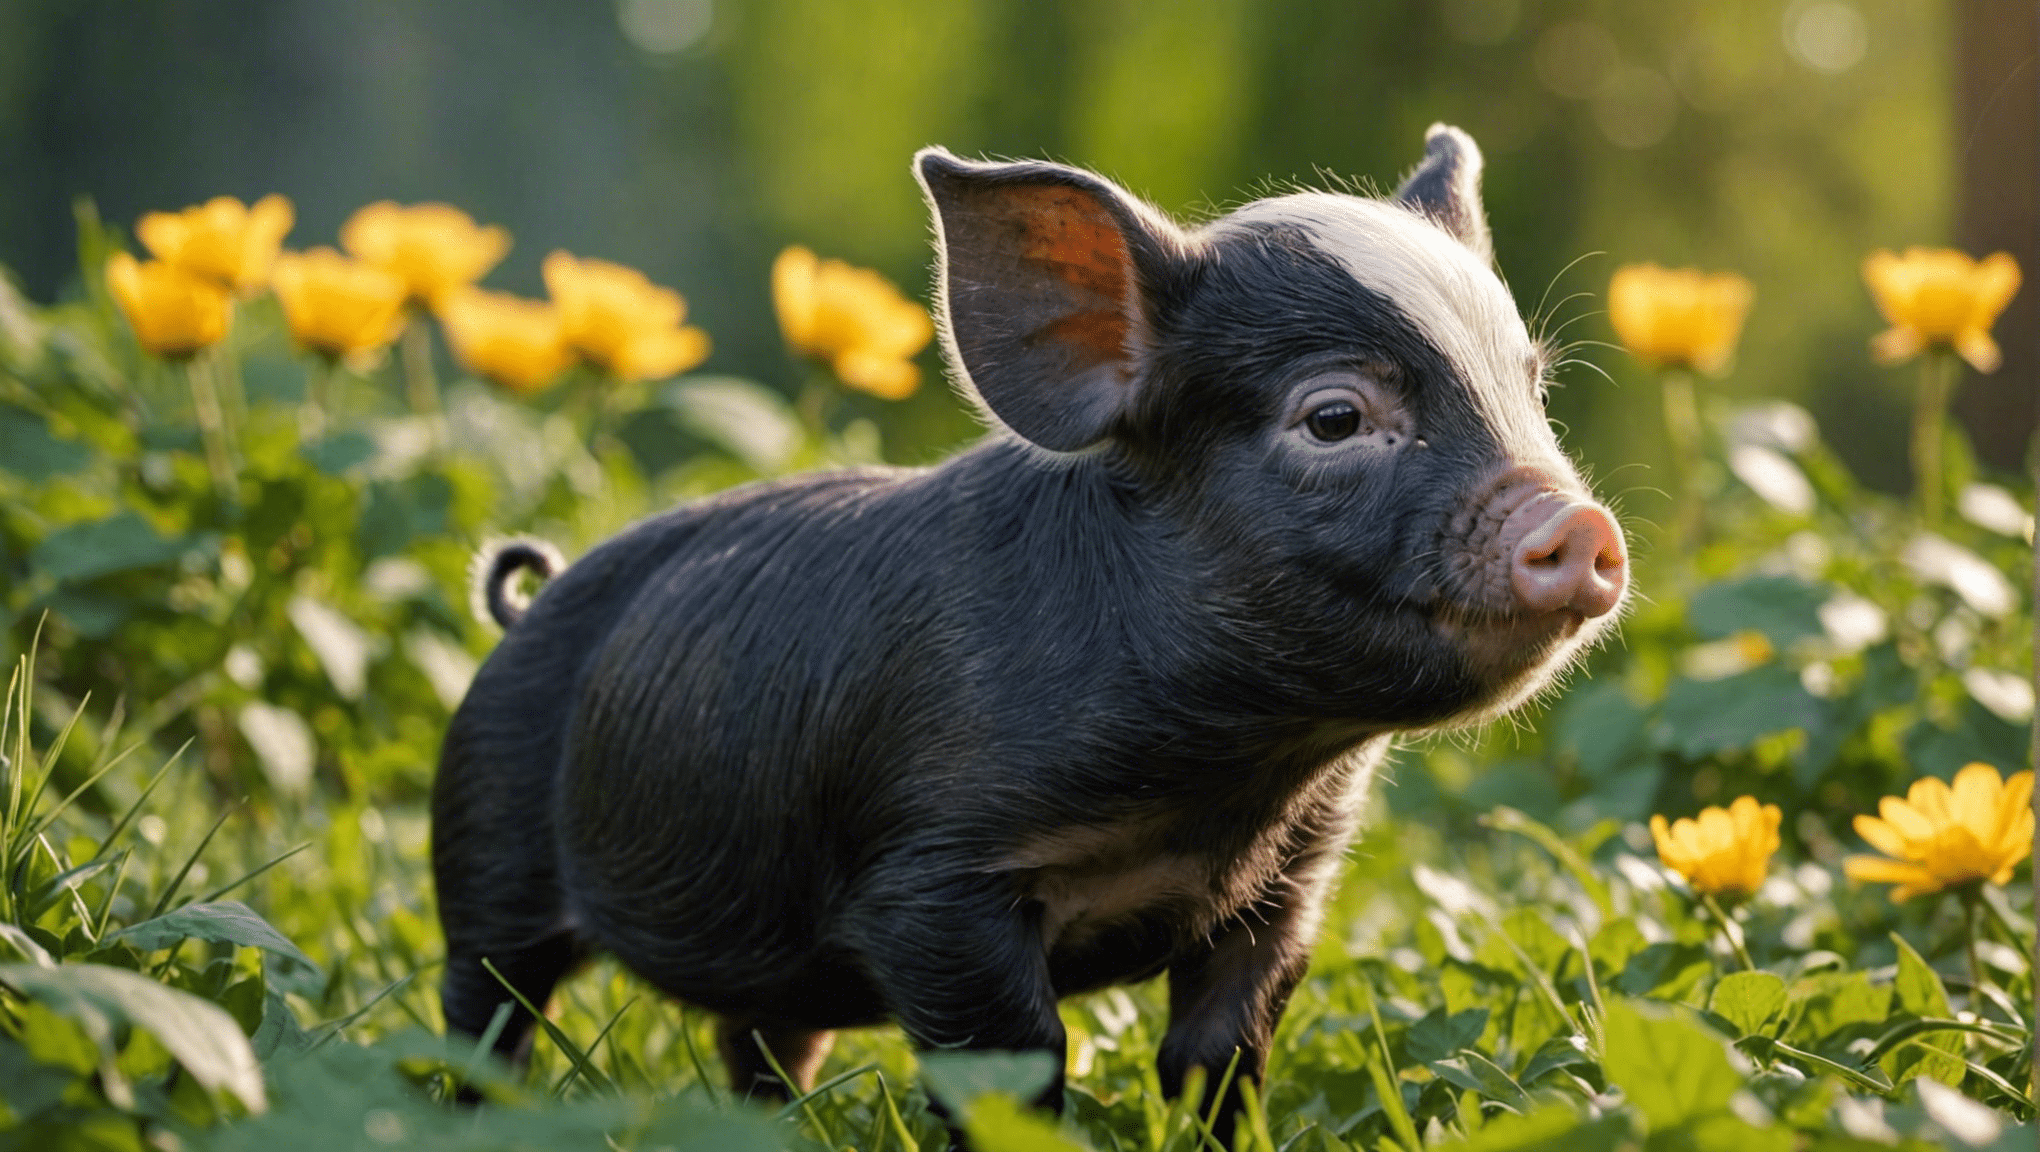 vind schattige en unieke namen voor pasgeboren biggen met onze lijst met schattige namen voor babyvarkens. Ontdek de perfecte naam voor uw kleine big!